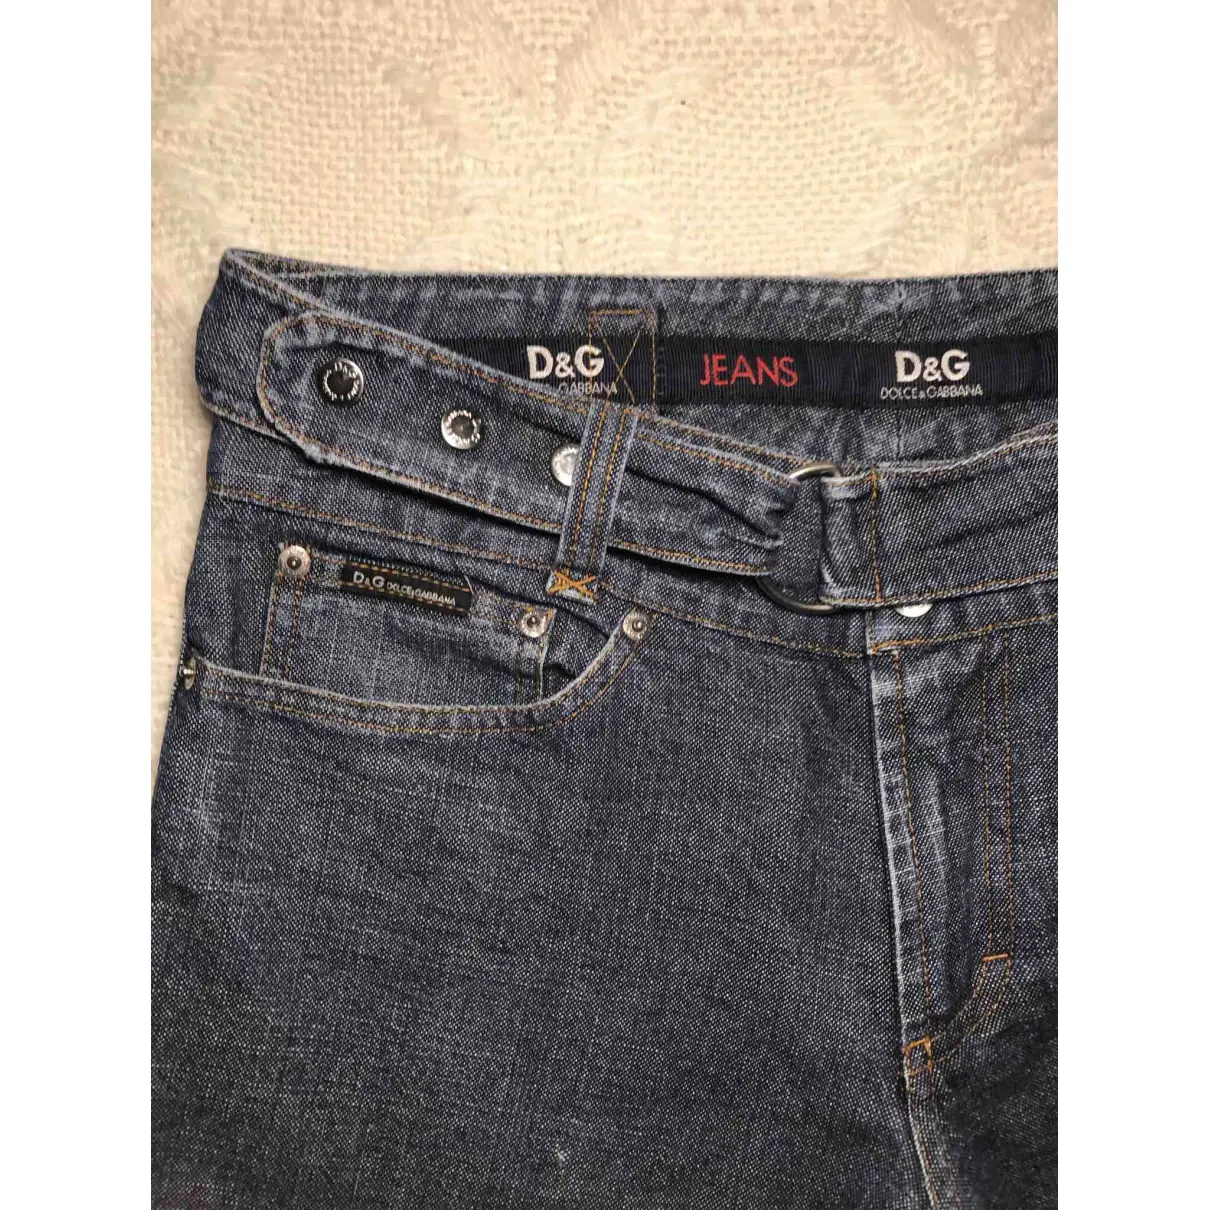 Large jeans D&G